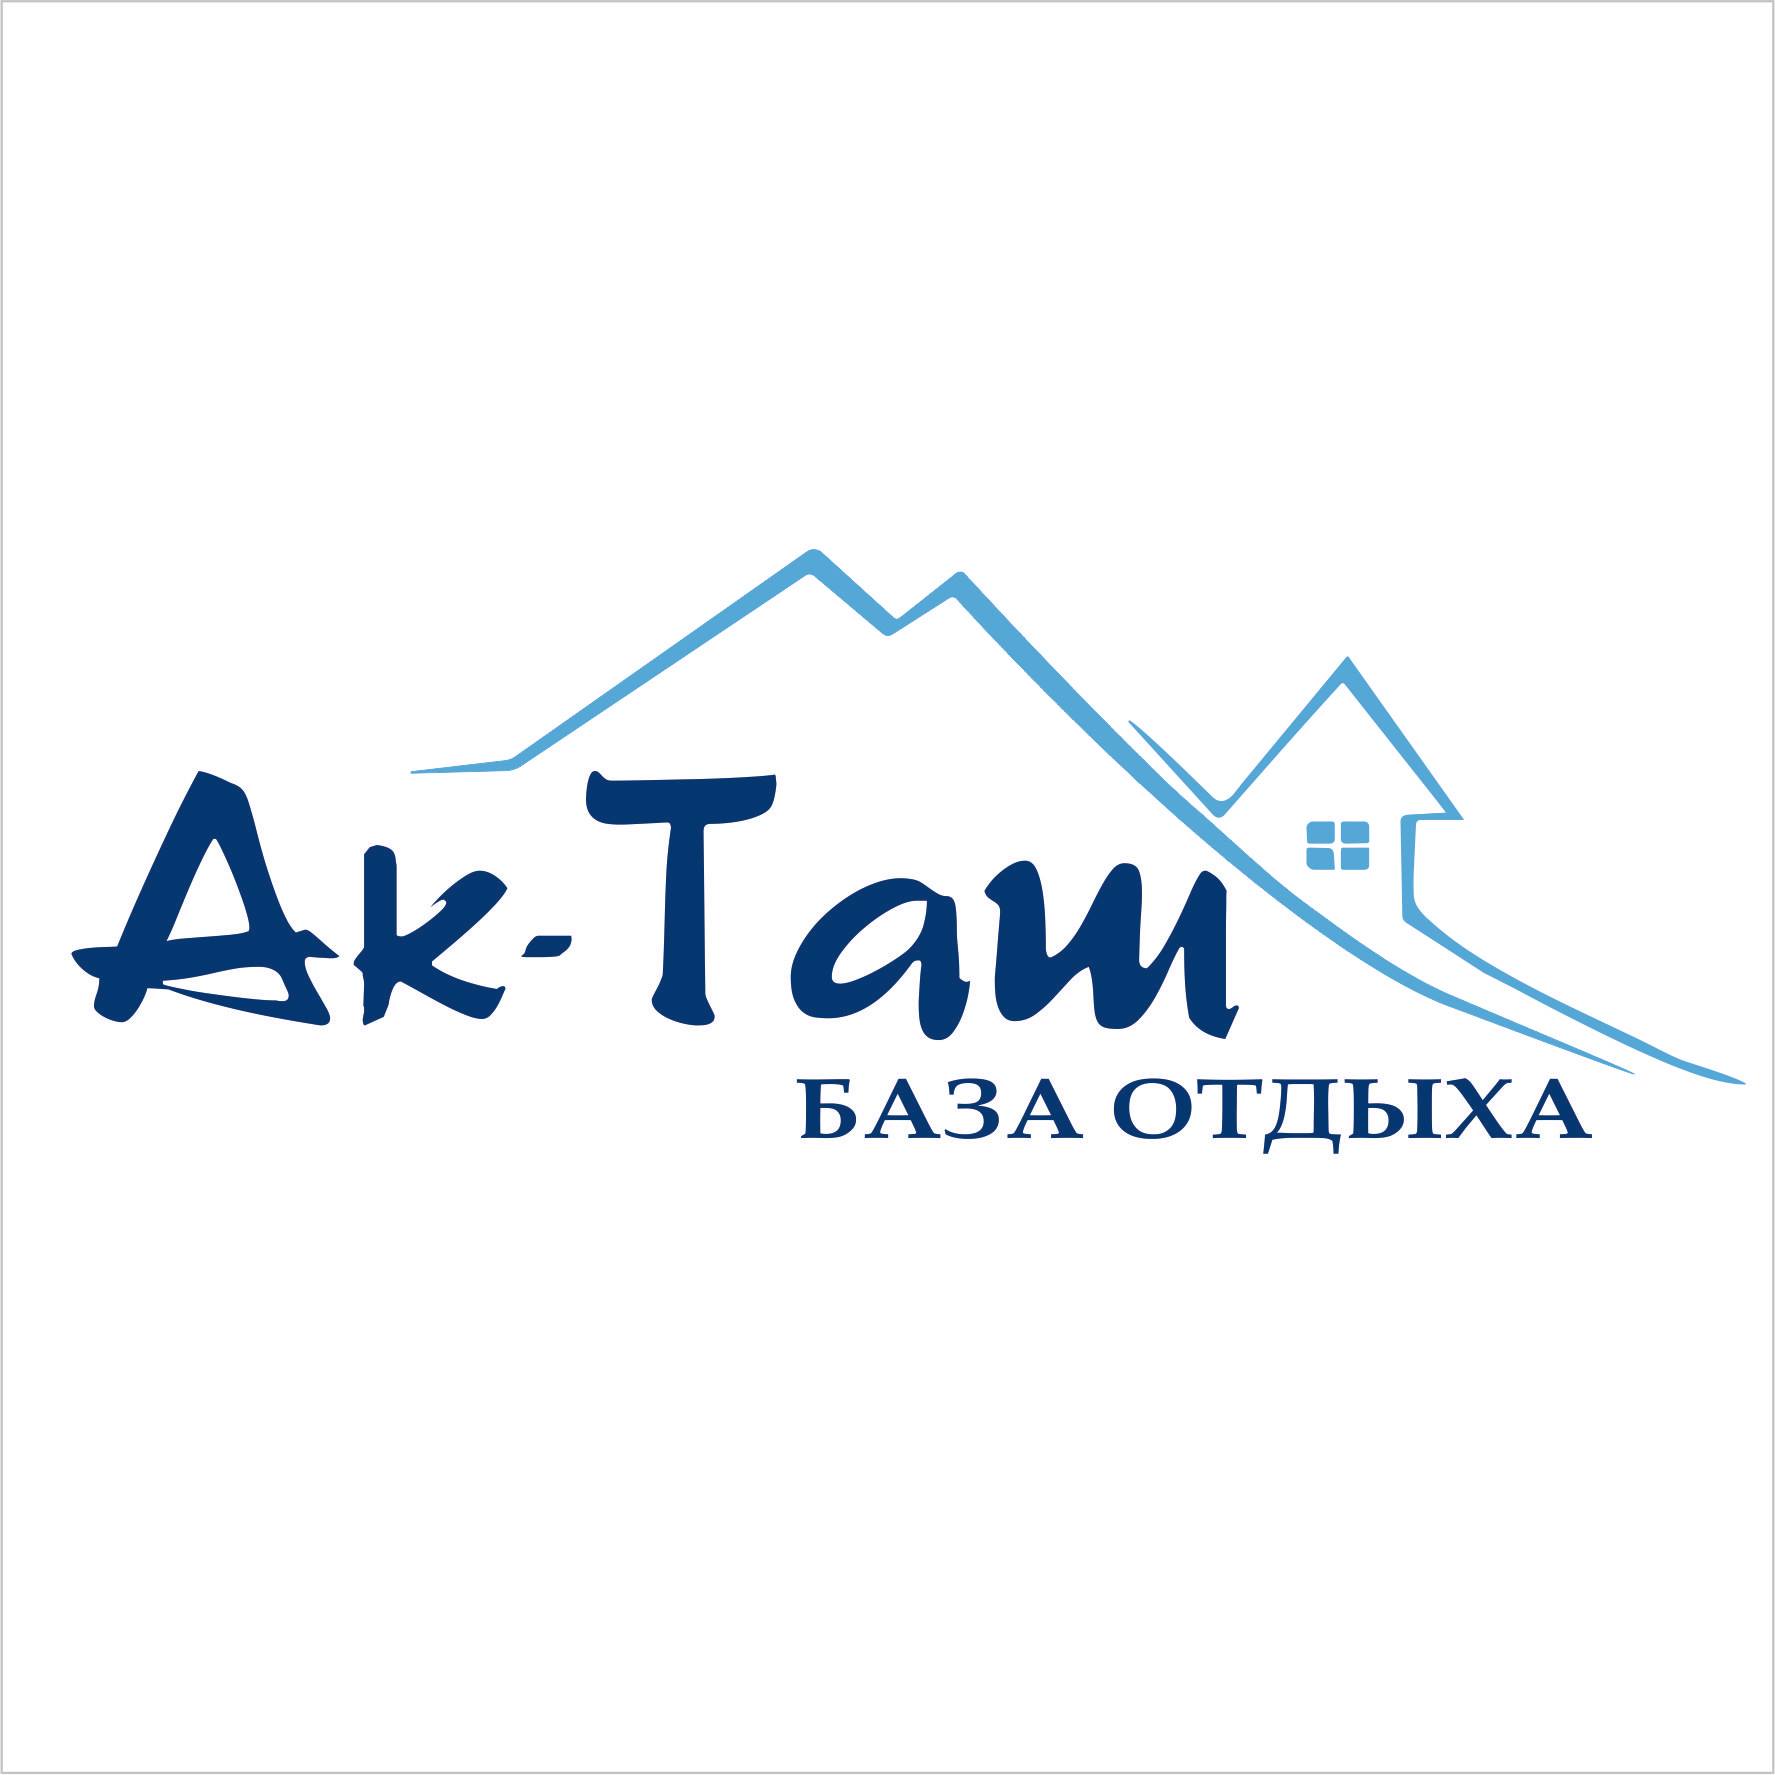 Logo of Ak-Tash mountain resort